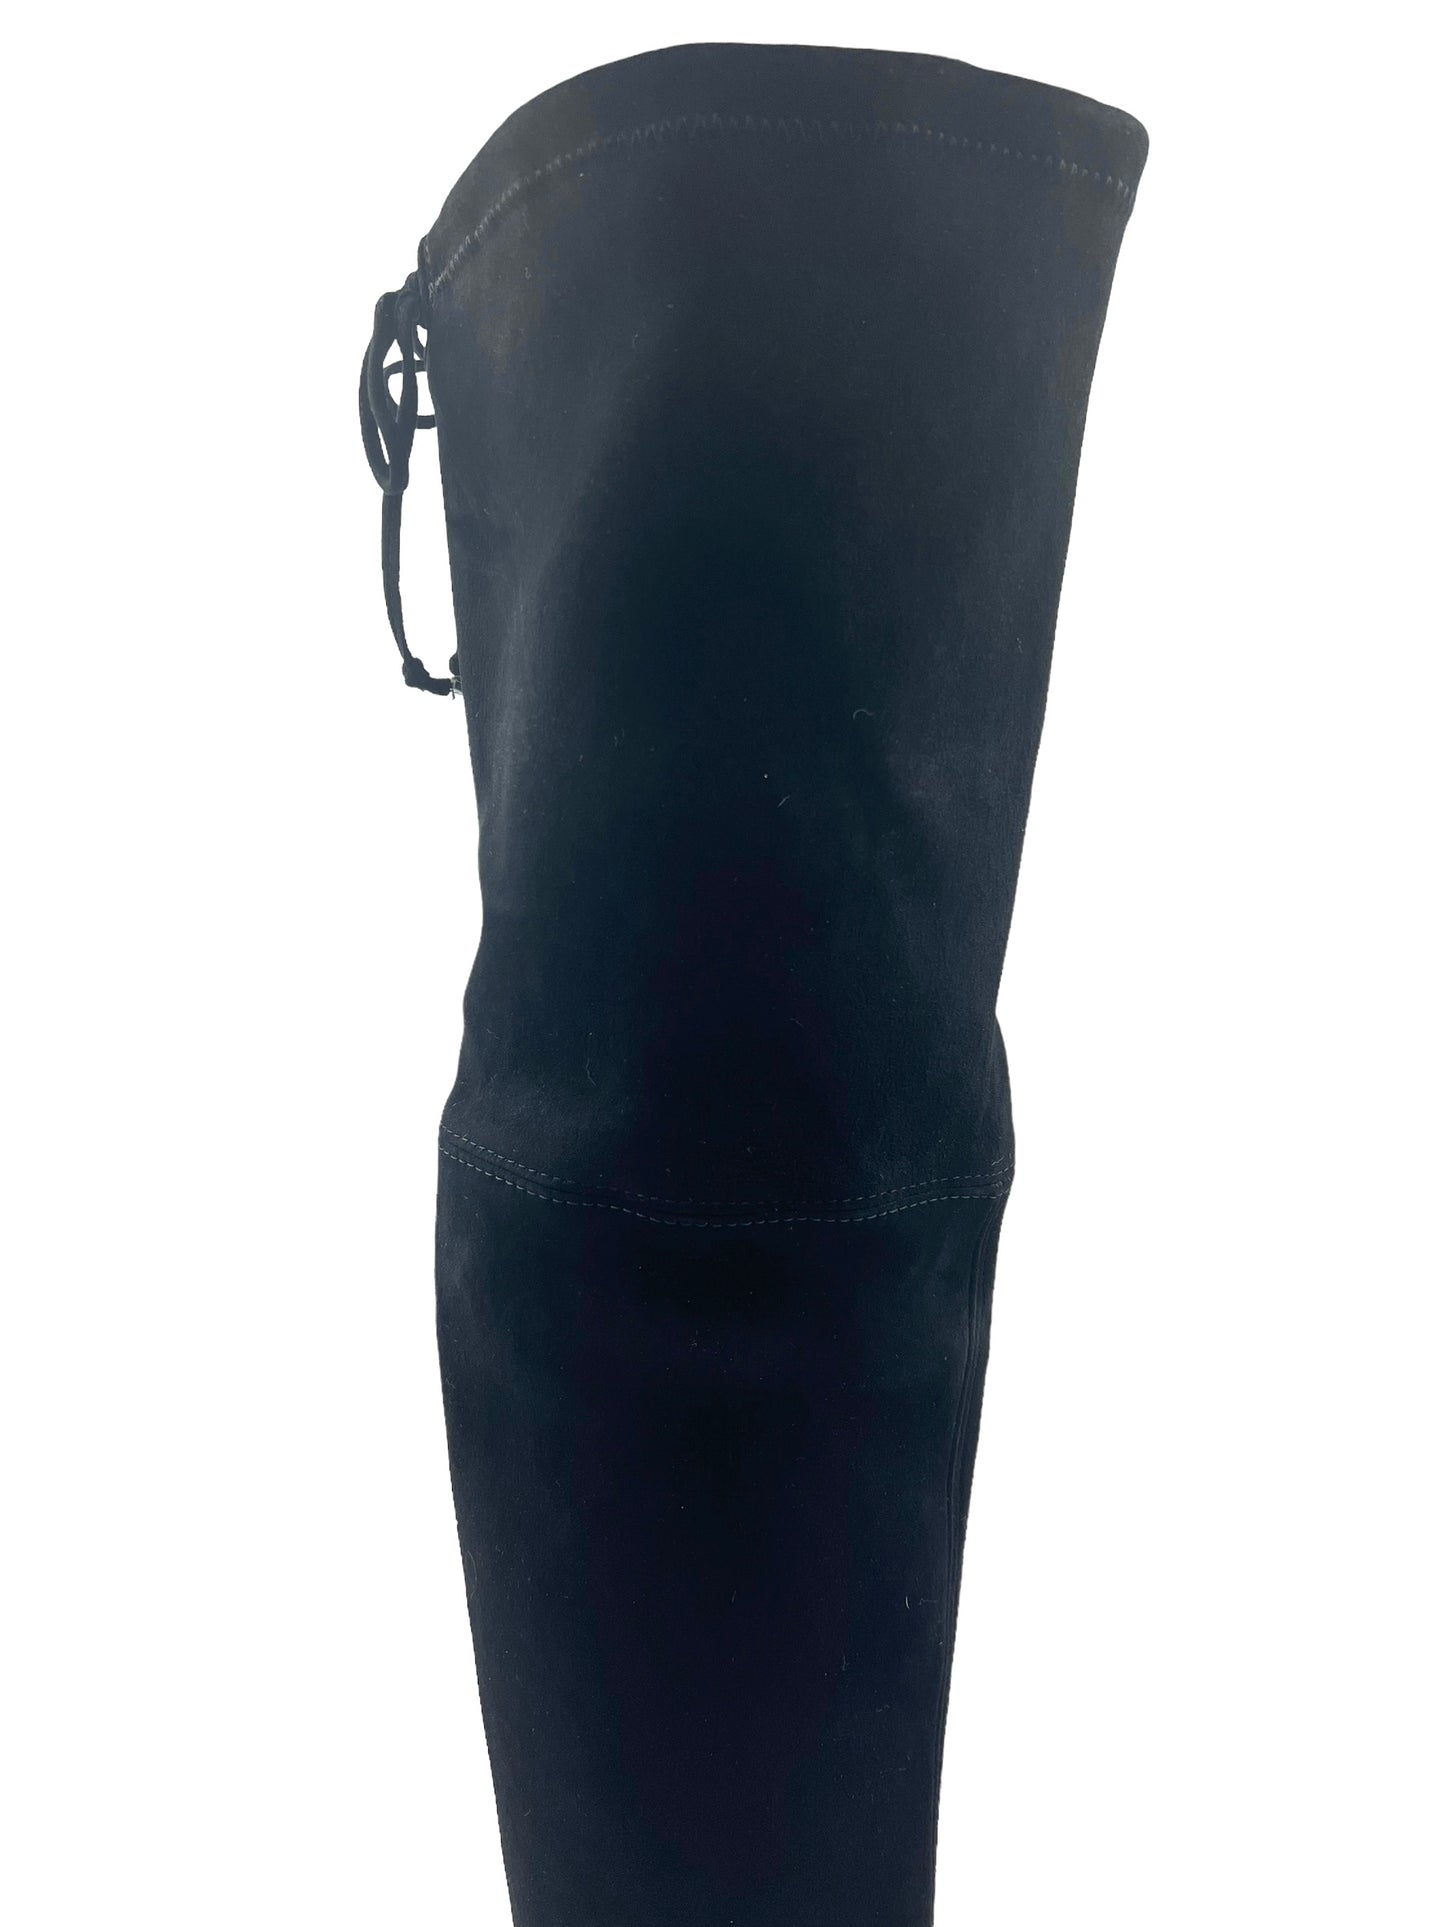 Stuart Weitzman Size 8.5 Black Suede Quebecland OTK Boots